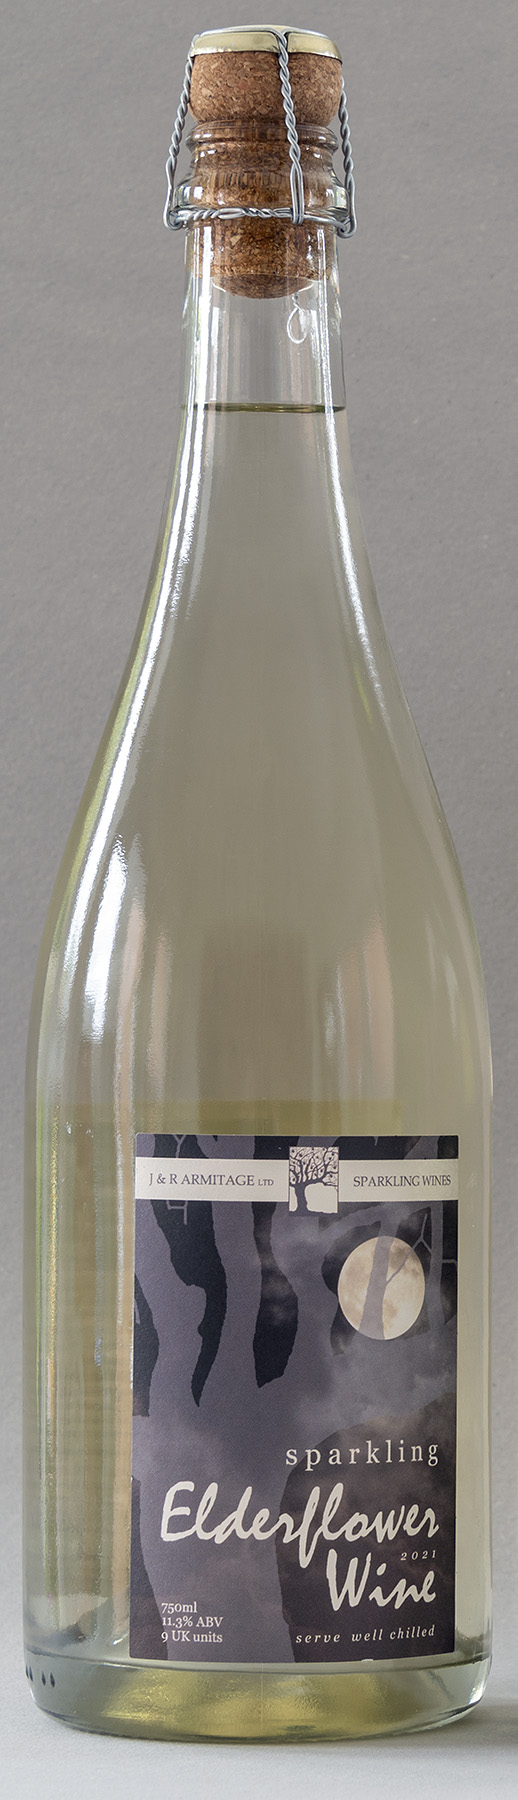 Sparkling Elderflower Wine (2021)